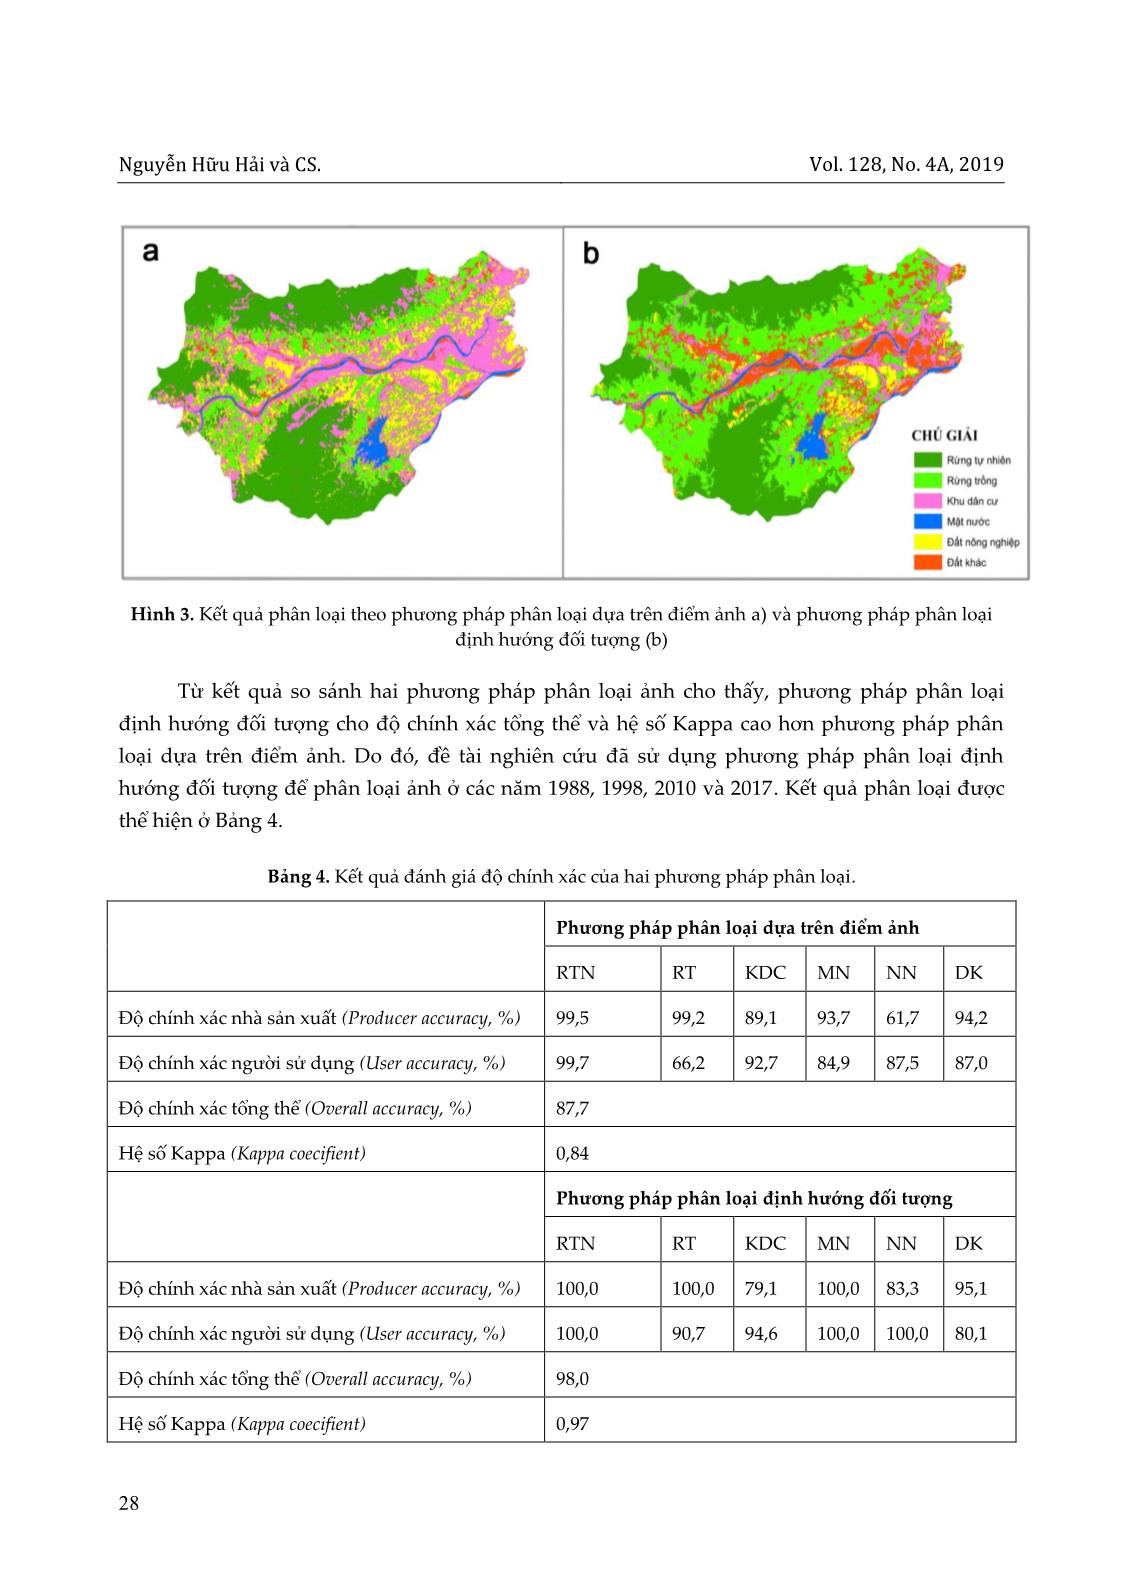 Ứng dụng viễn thám và GIS trong đánh giá biến động diện tích rừng huyện Đại Lộc, tỉnh Quảng Nam giai đoạn 1988-2017 trang 8